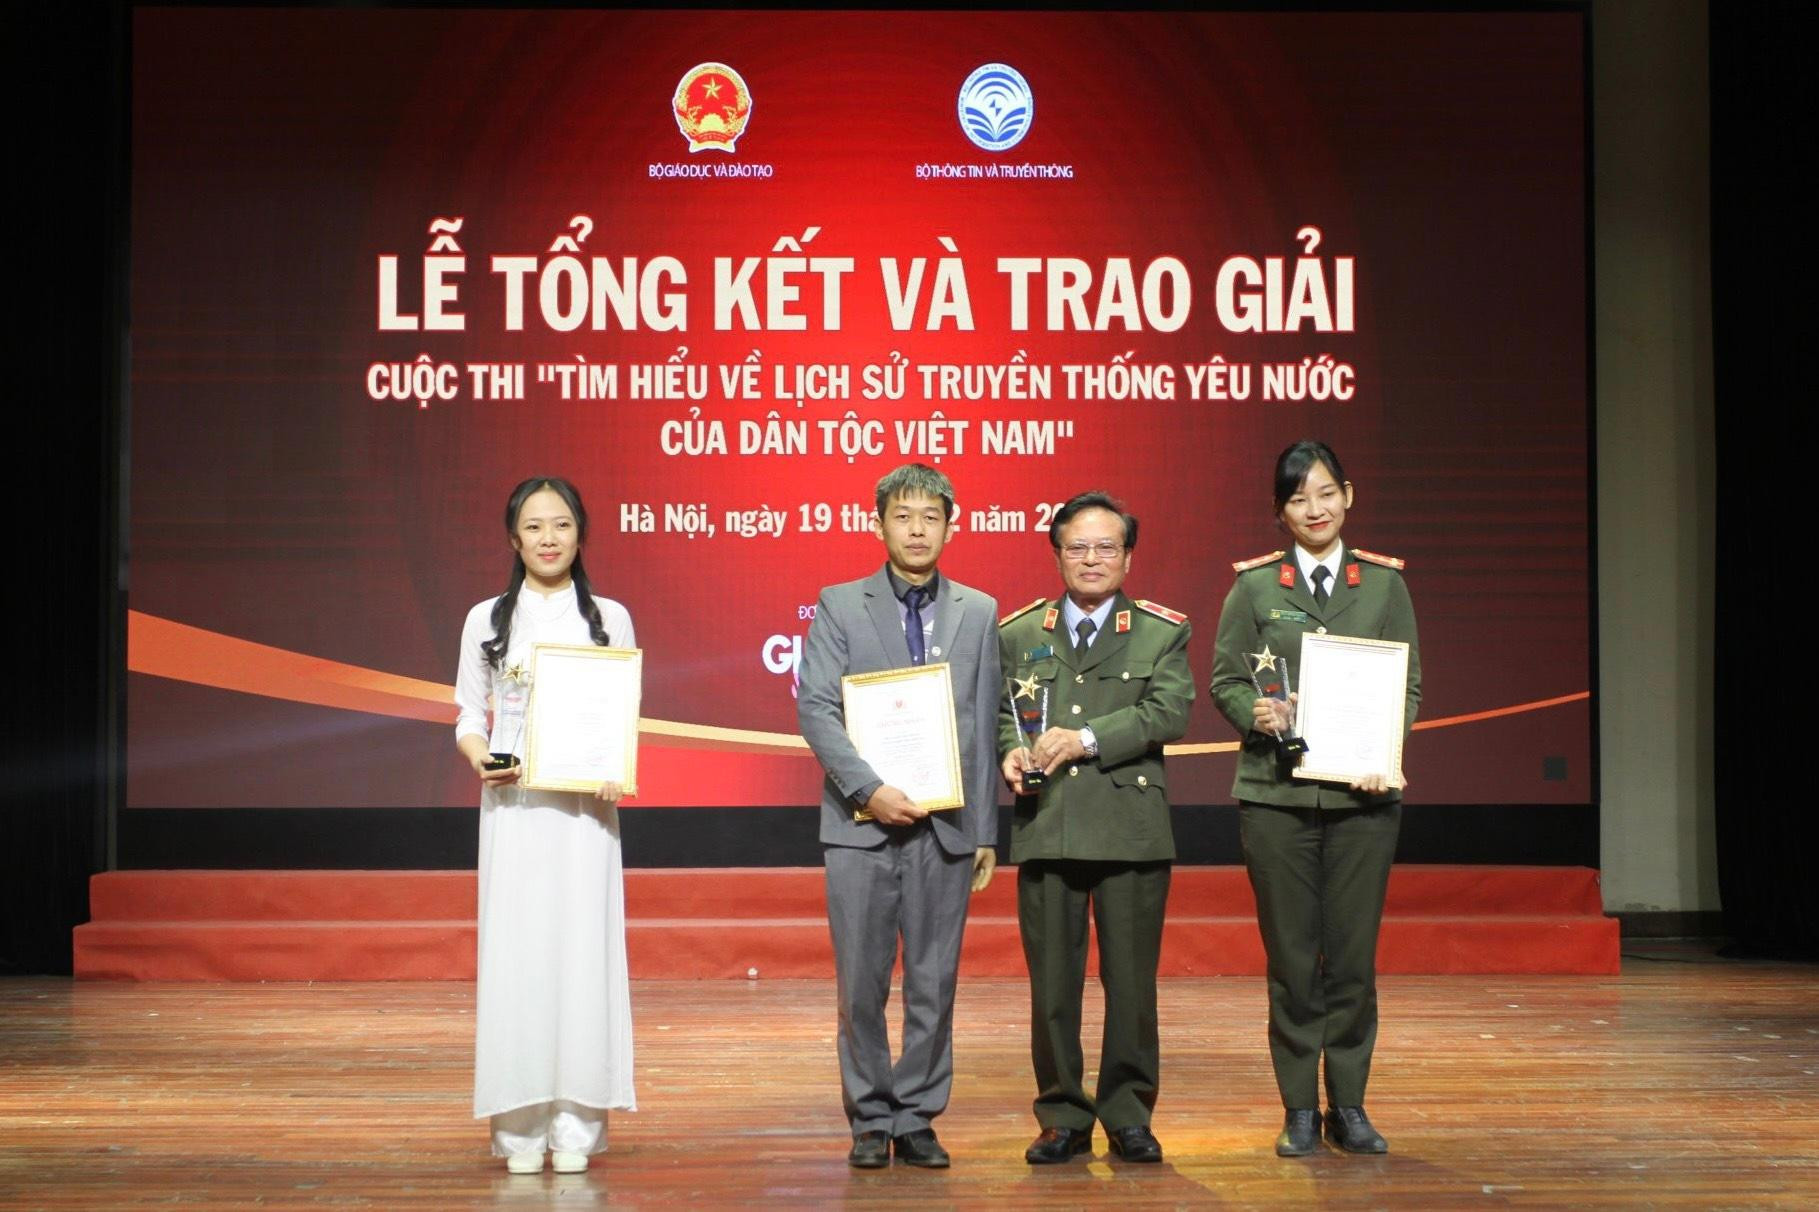 Trao giải cuộc thi Tìm hiểu lịch sử truyền thống yêu nước của dân tộc Việt Nam ảnh 6